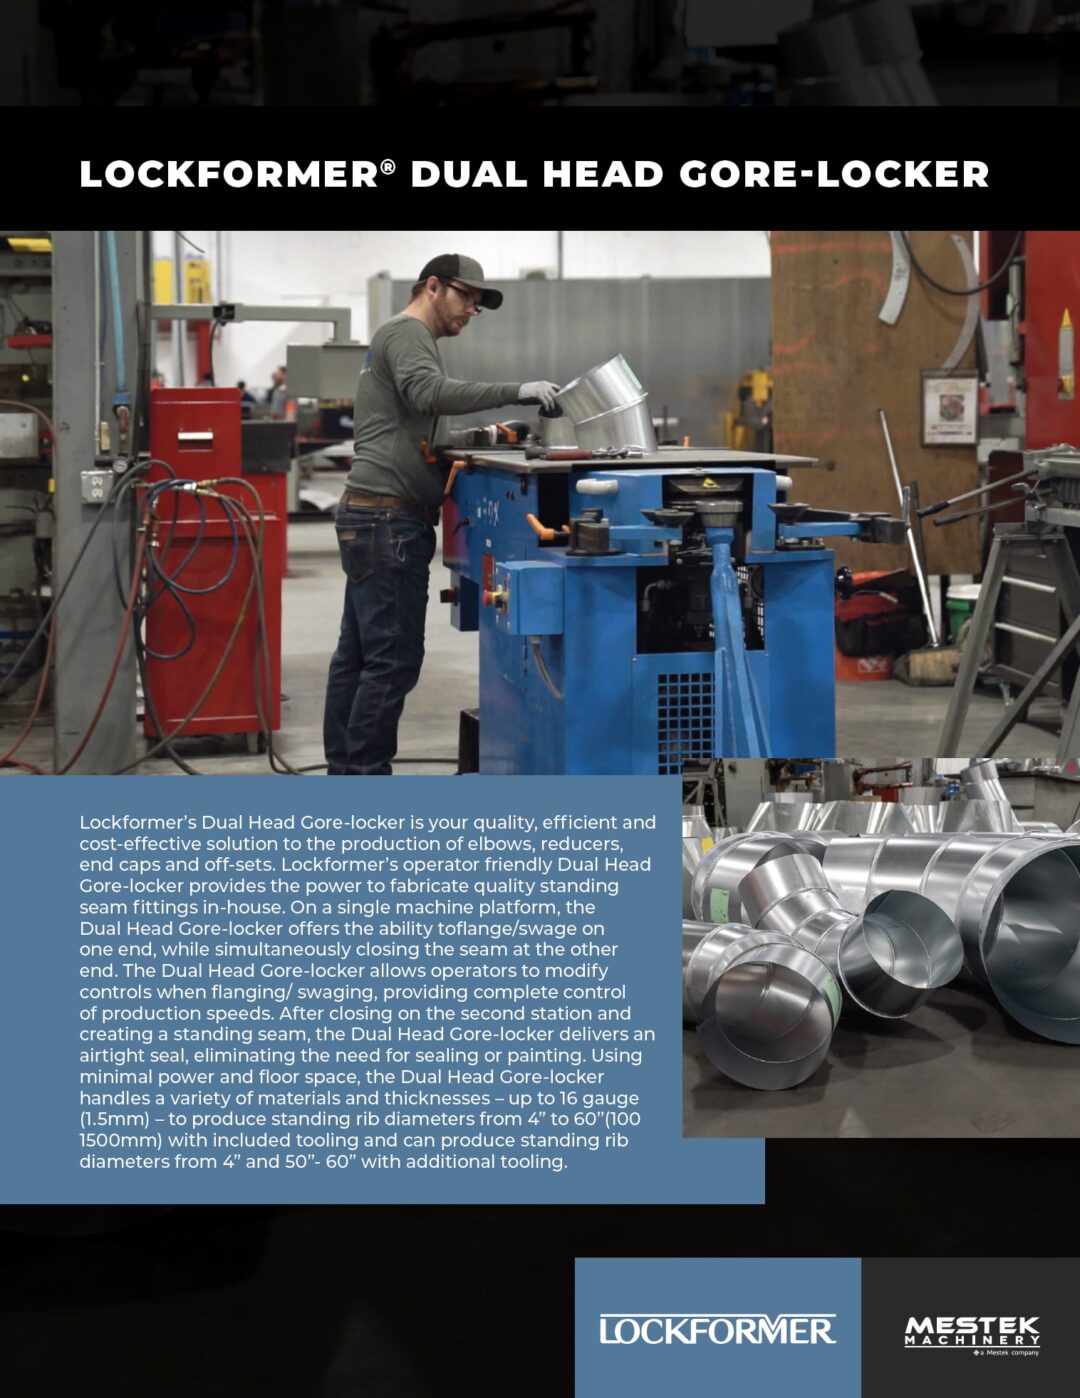 Brochure: Lockformer Dual Head Gore-Locker